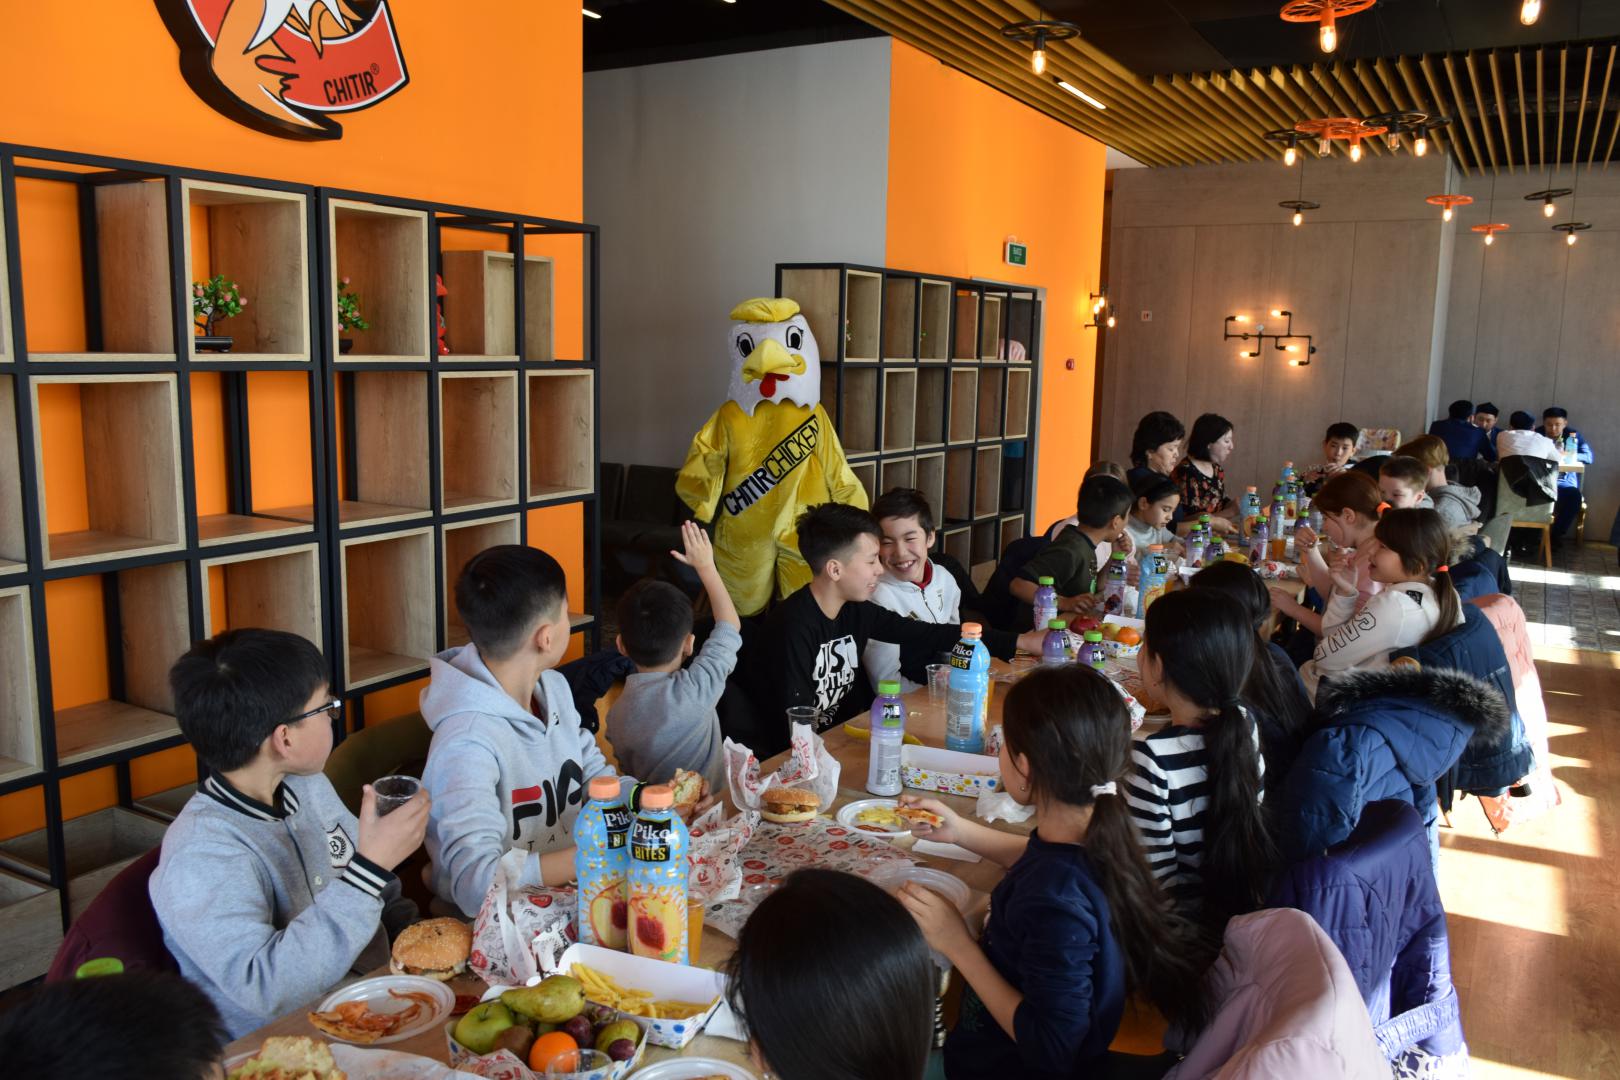 Ресторан быстрого питания «Chitir Chicken» совместно с фондом «Зекет» организовали благотворительный обед для детей